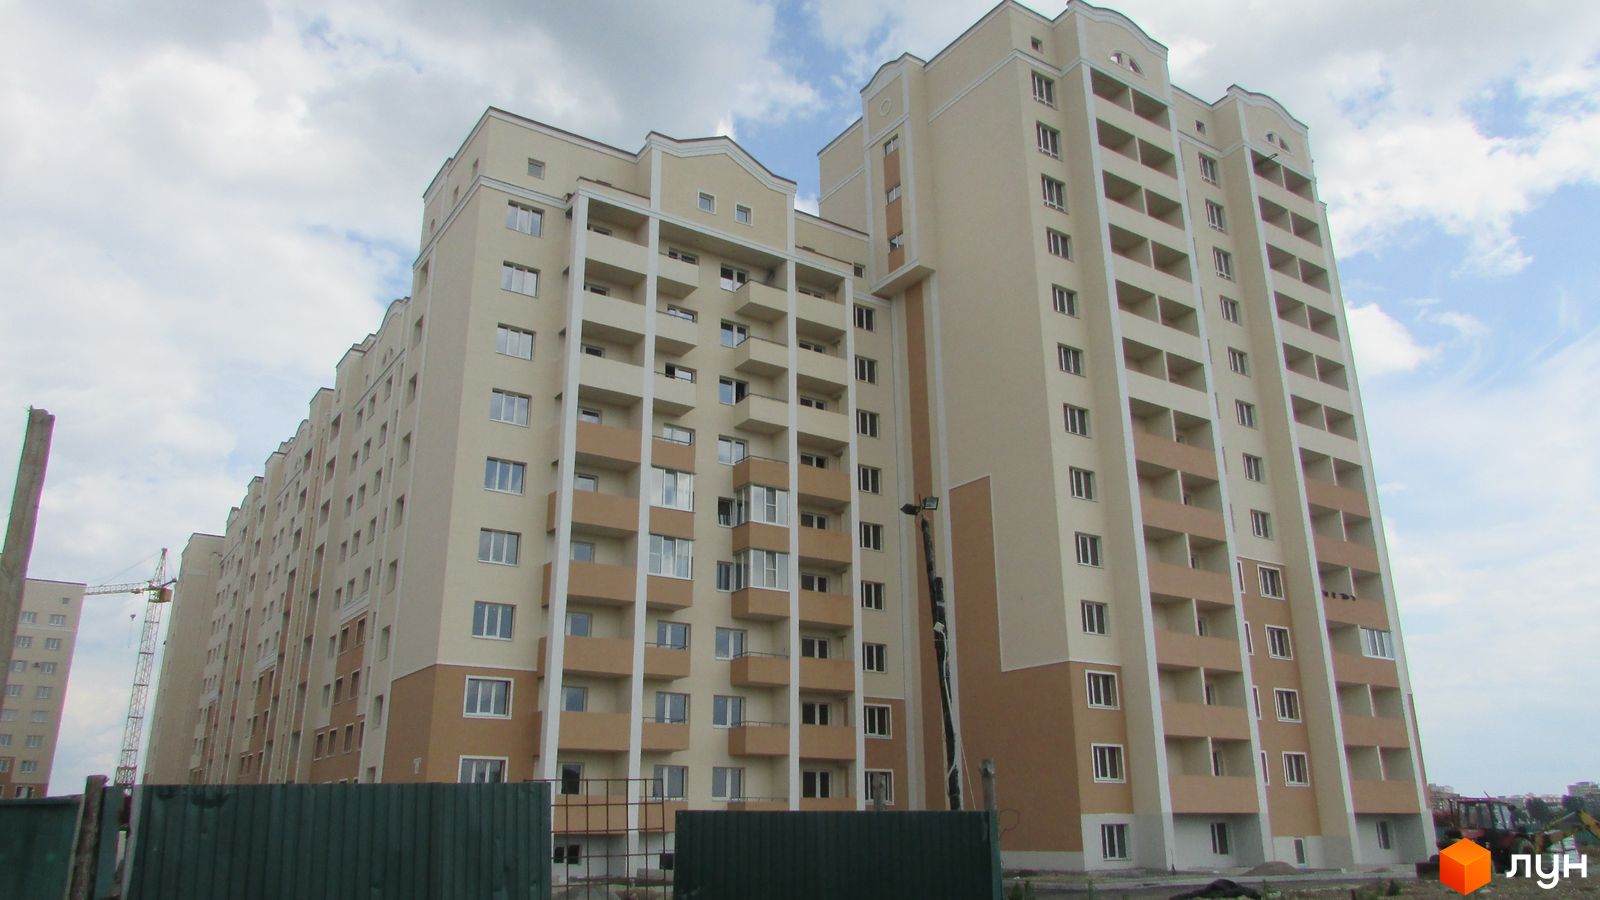 Моніторинг будівництва ЖК Софія Київська - Ракурс 2, травень 2016